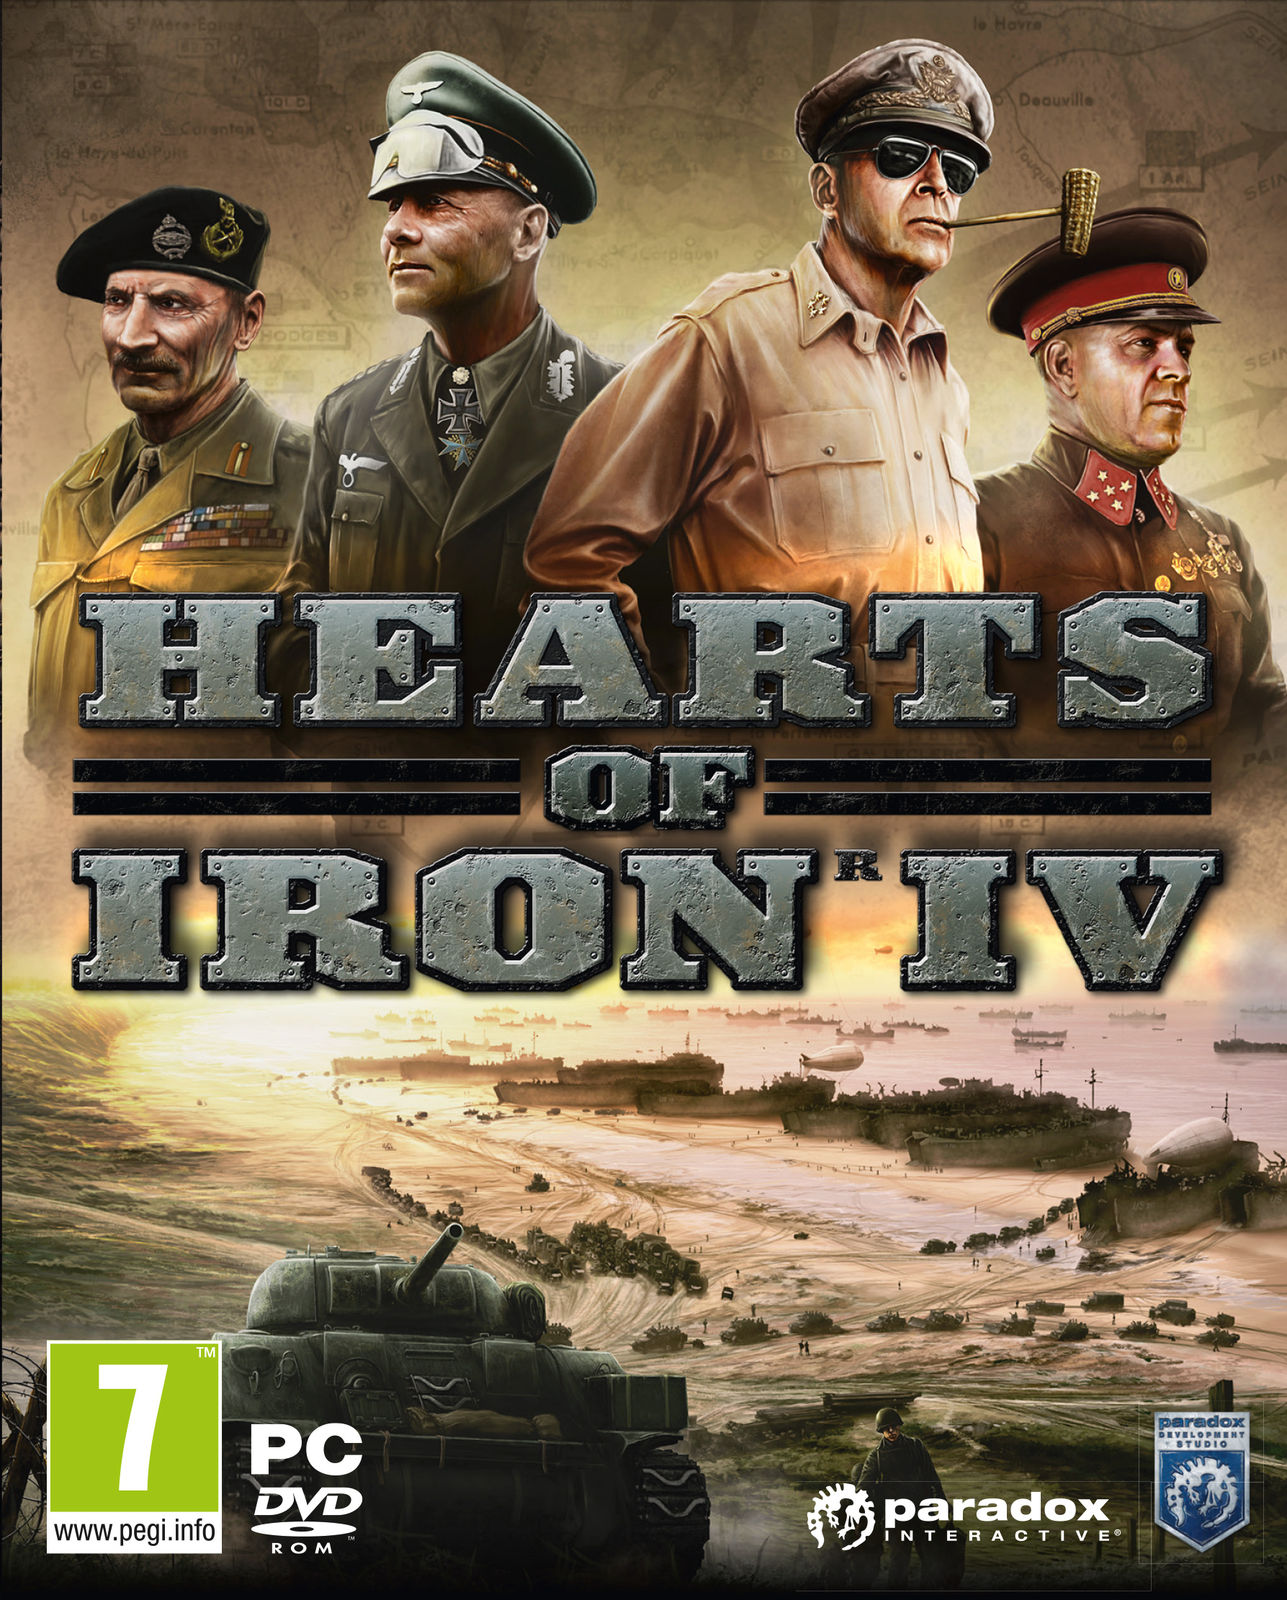 Фотография hearts of iron iv 4: cadet edition (steam) ru/cis